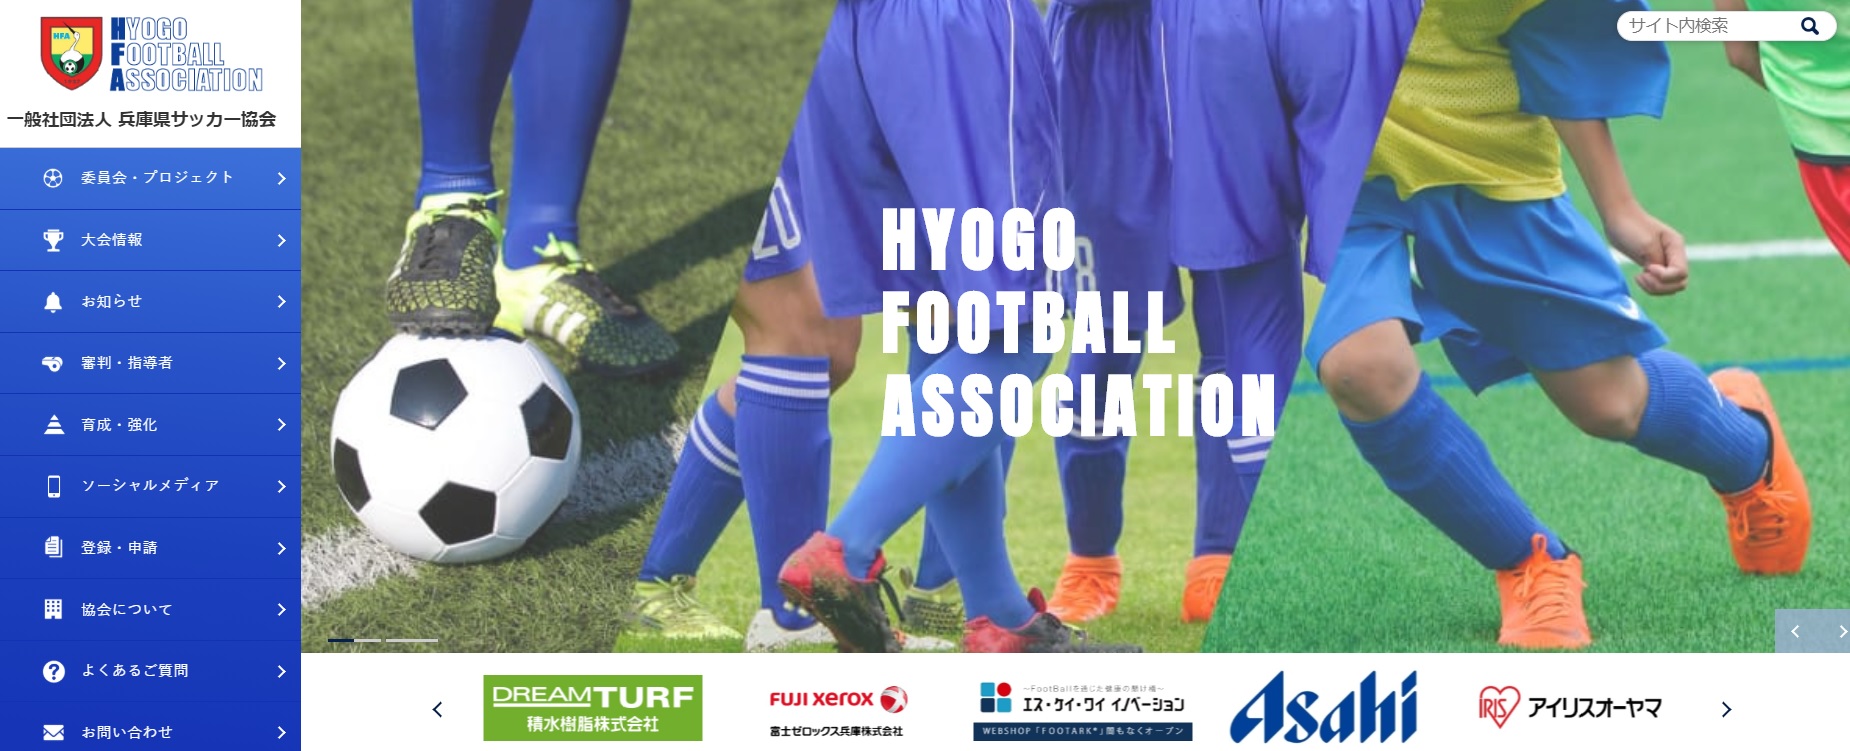 일본 효고현축구협회 홈페이지.